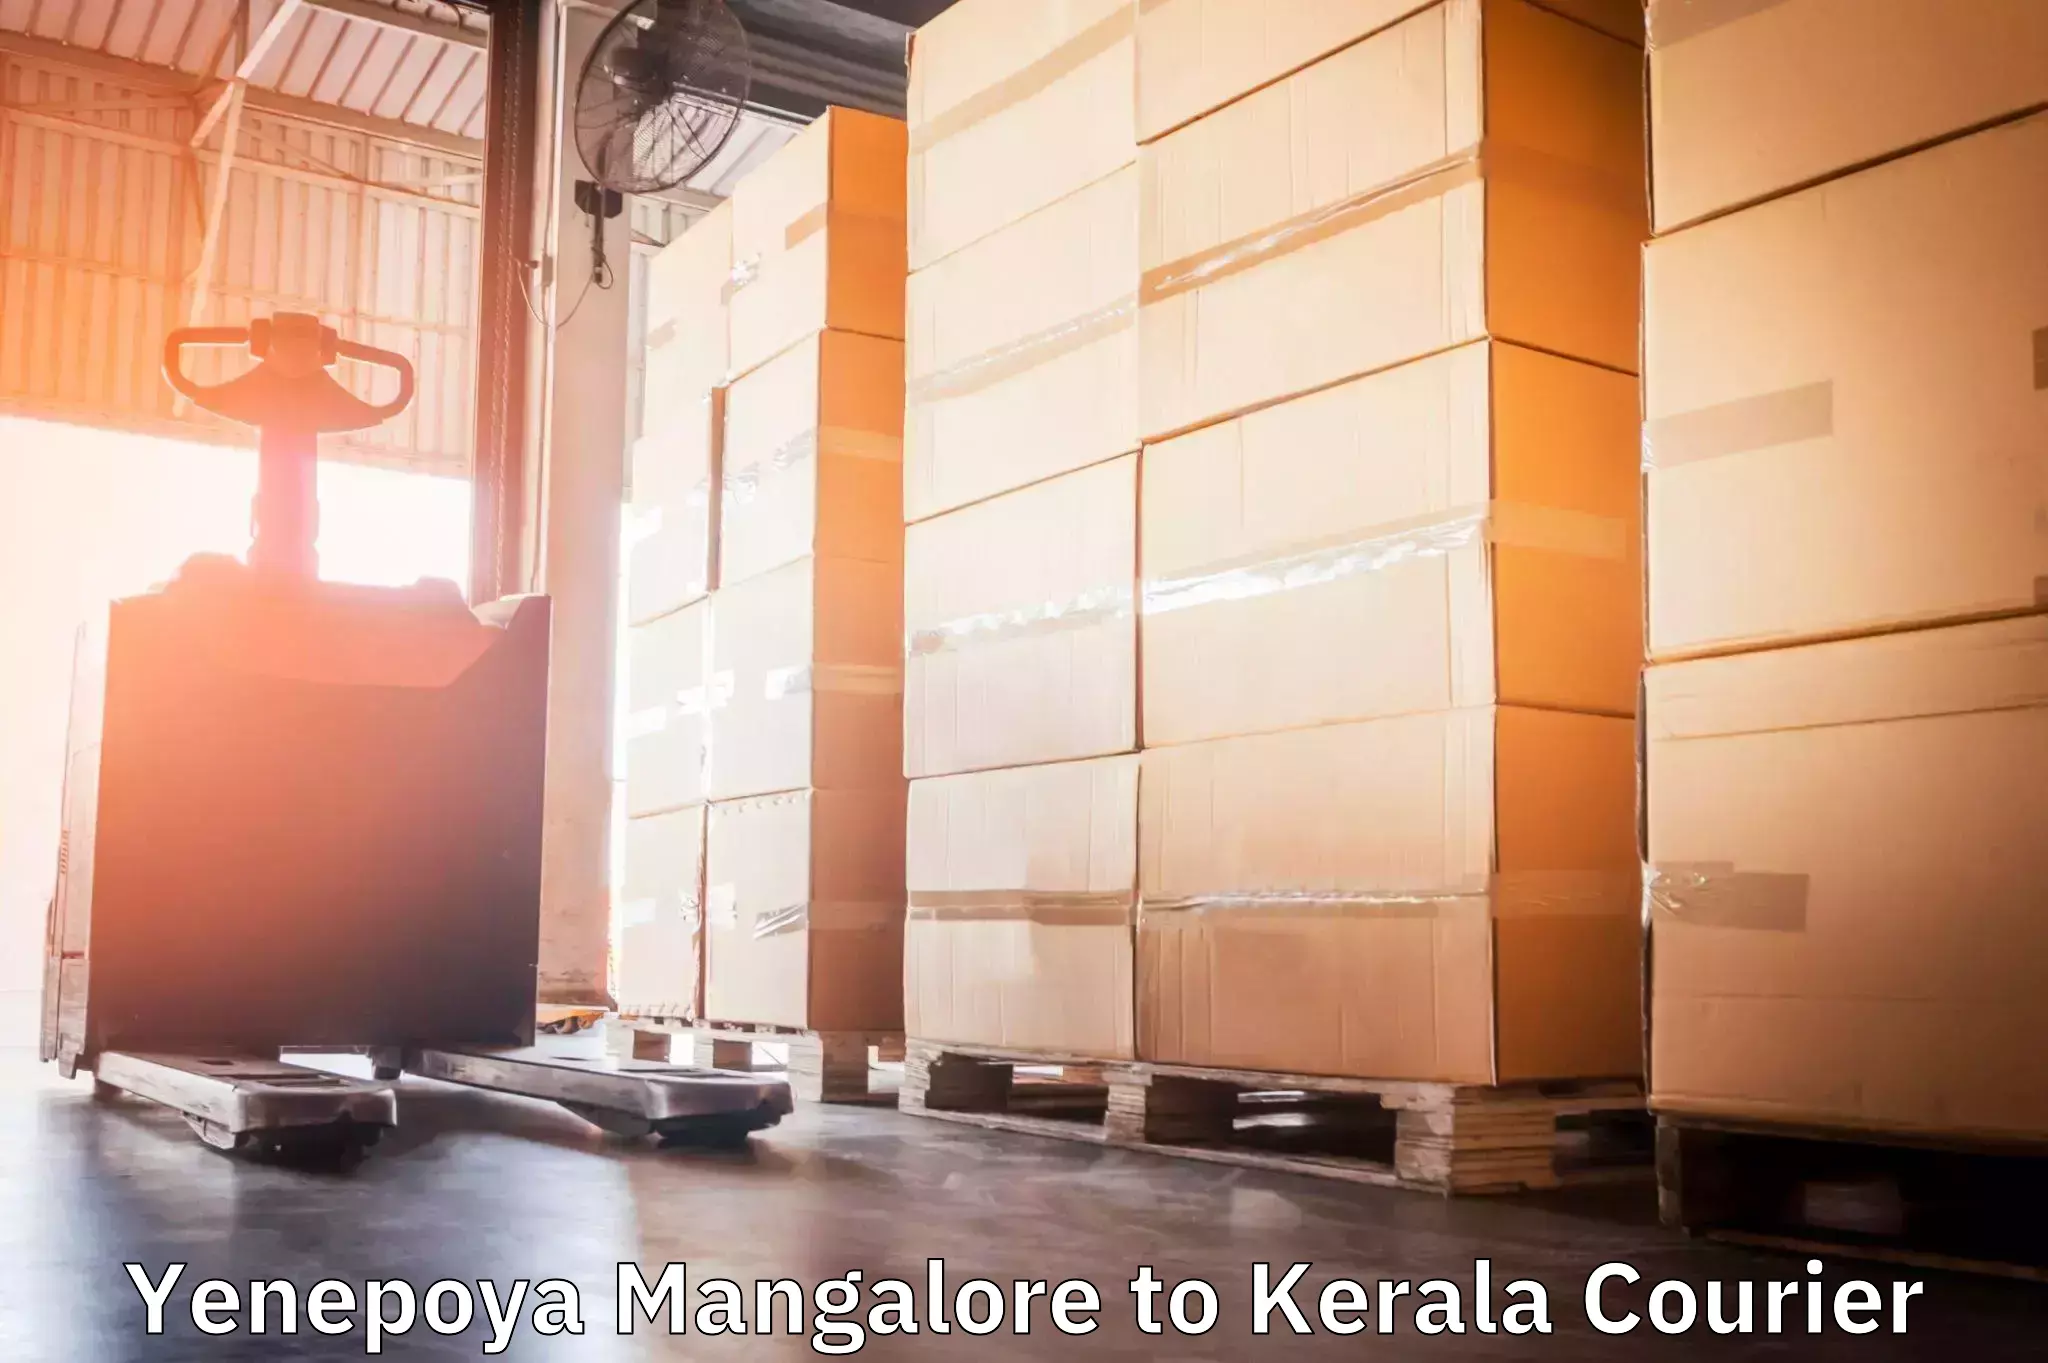 Quick booking process Yenepoya Mangalore to Kerala